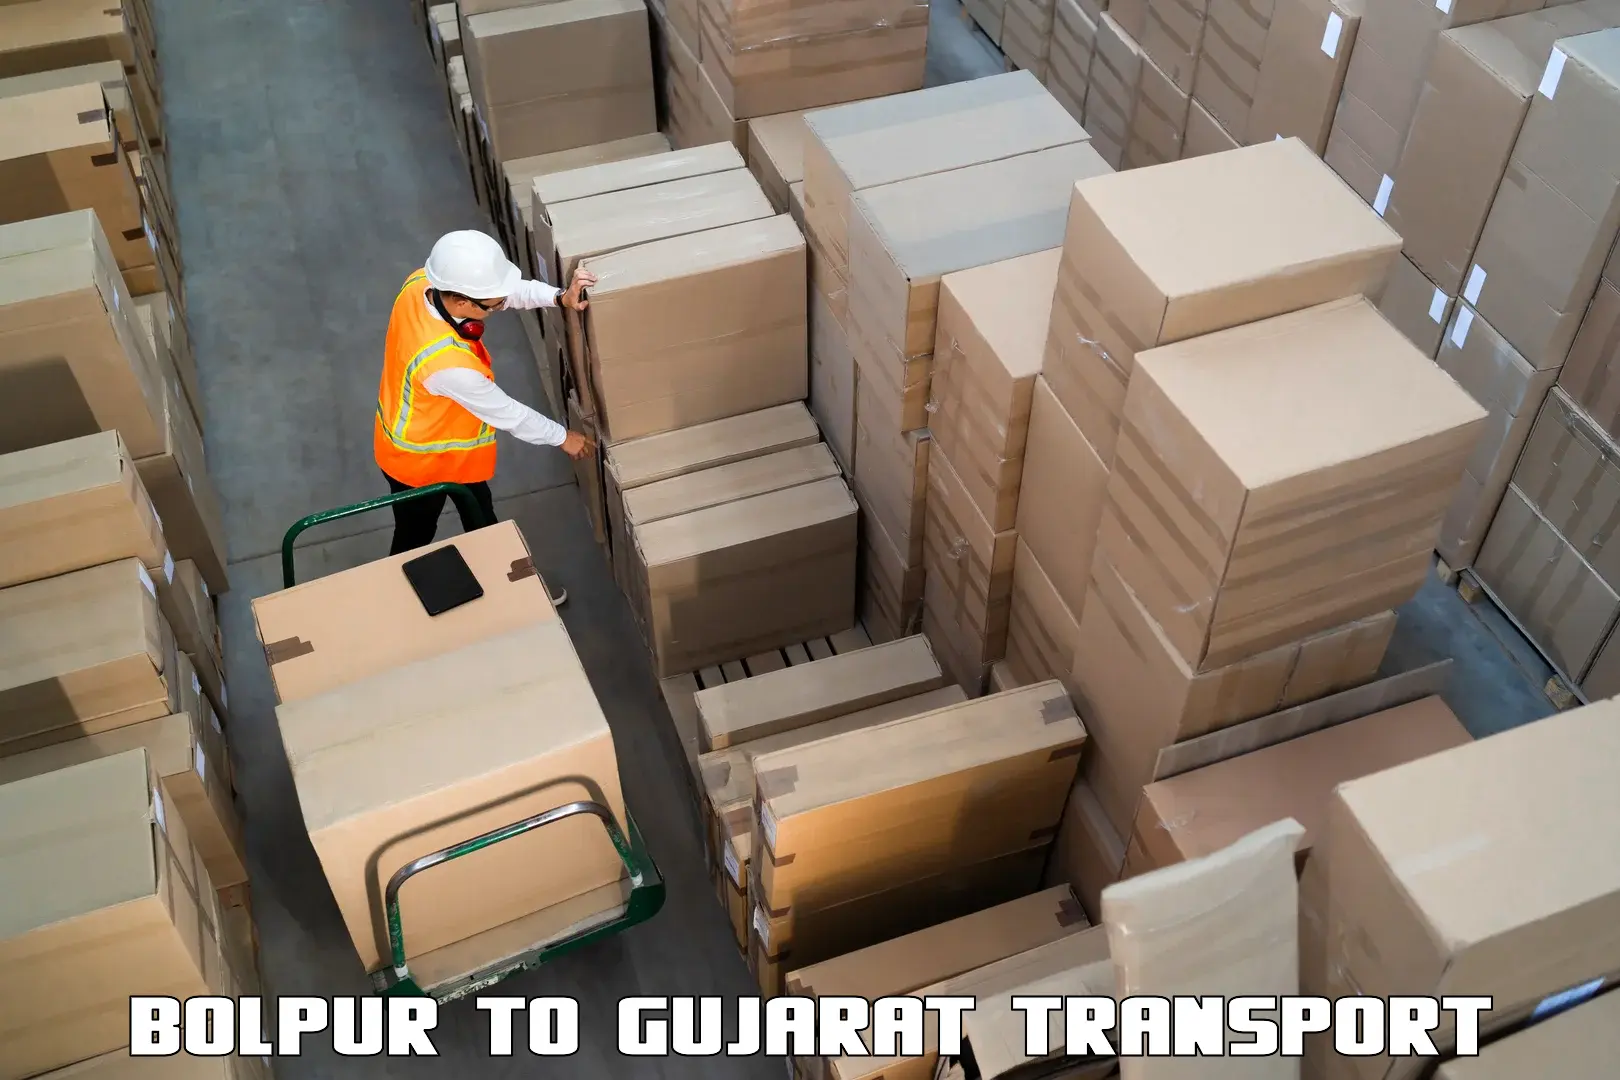 Commercial transport service Bolpur to Gujarat